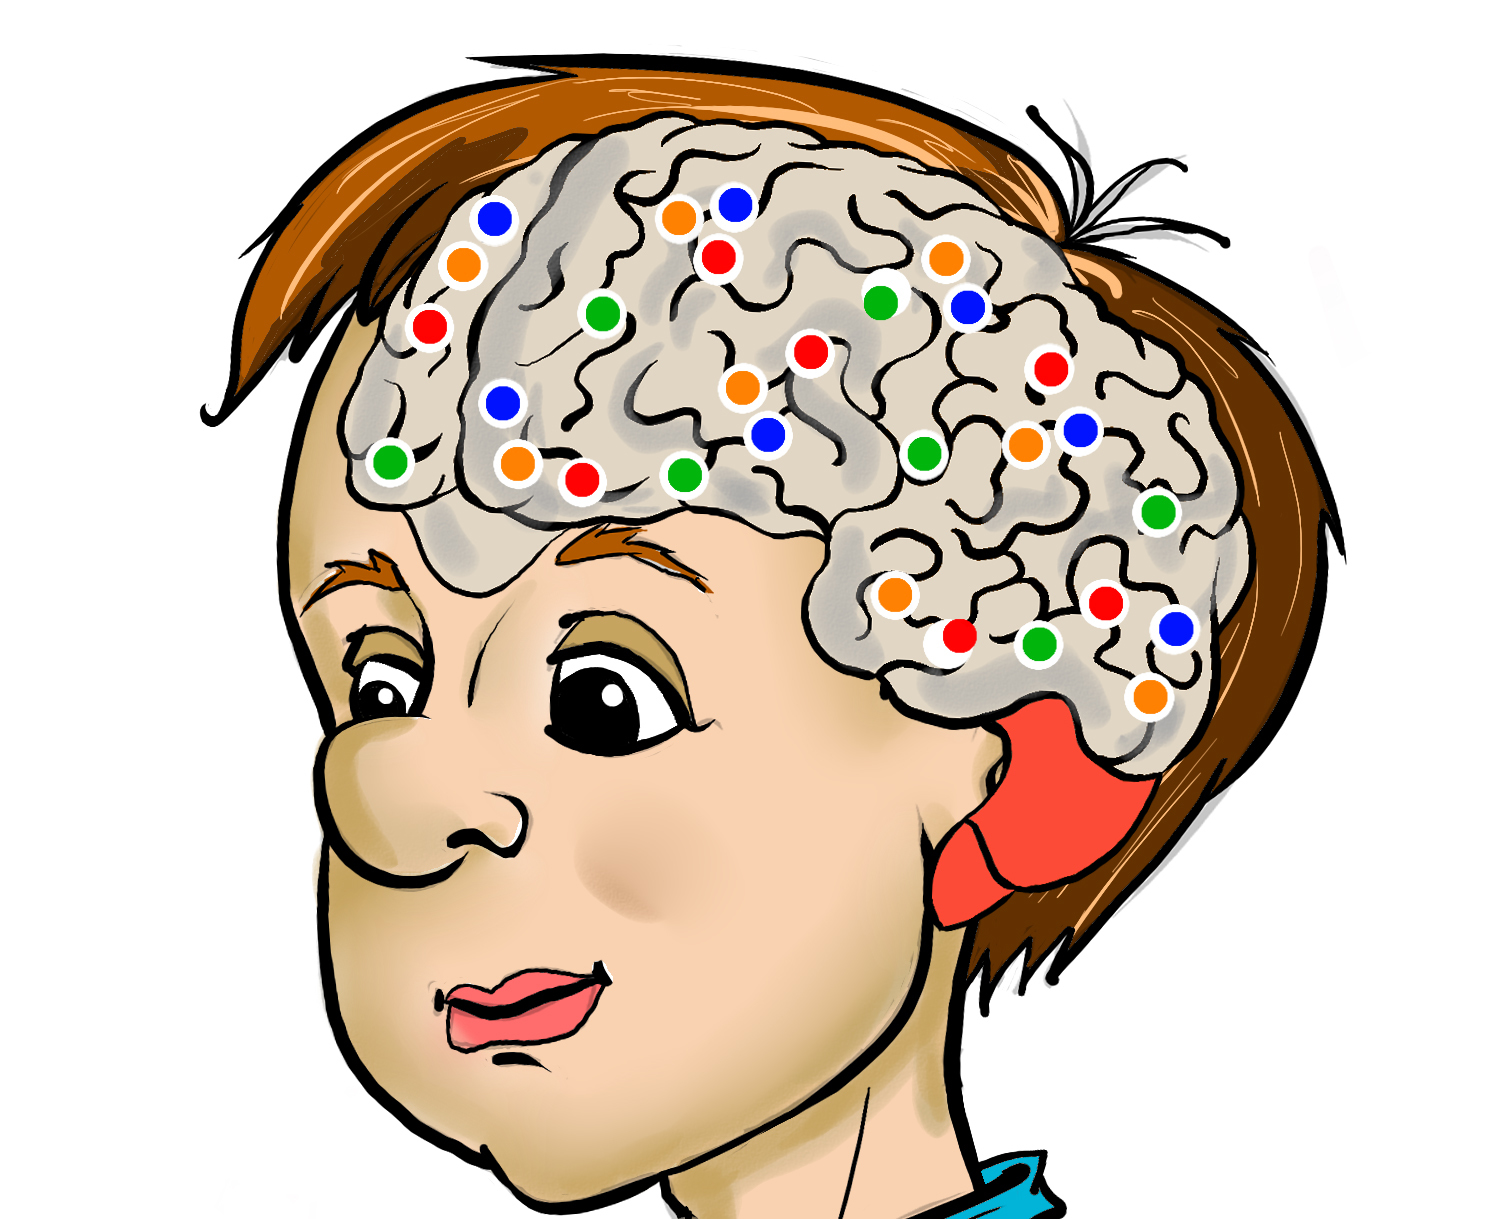 Стимуляция мозга ребенка